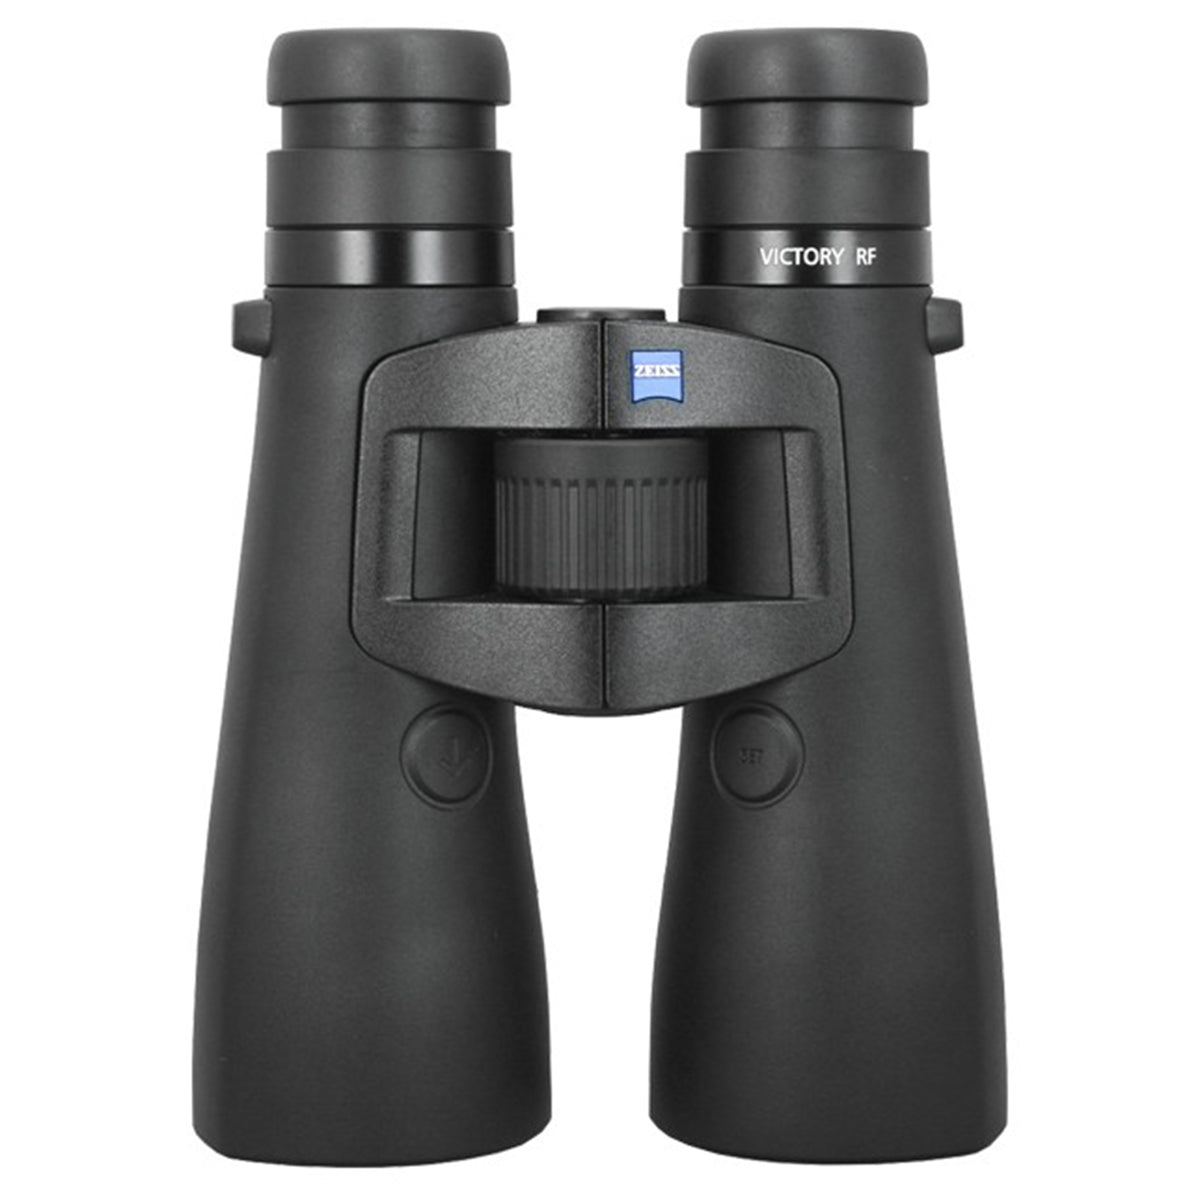 Zeiss 10x54 Victory Rangefinding Binocular by Zeiss | Optics - goHUNT Shop